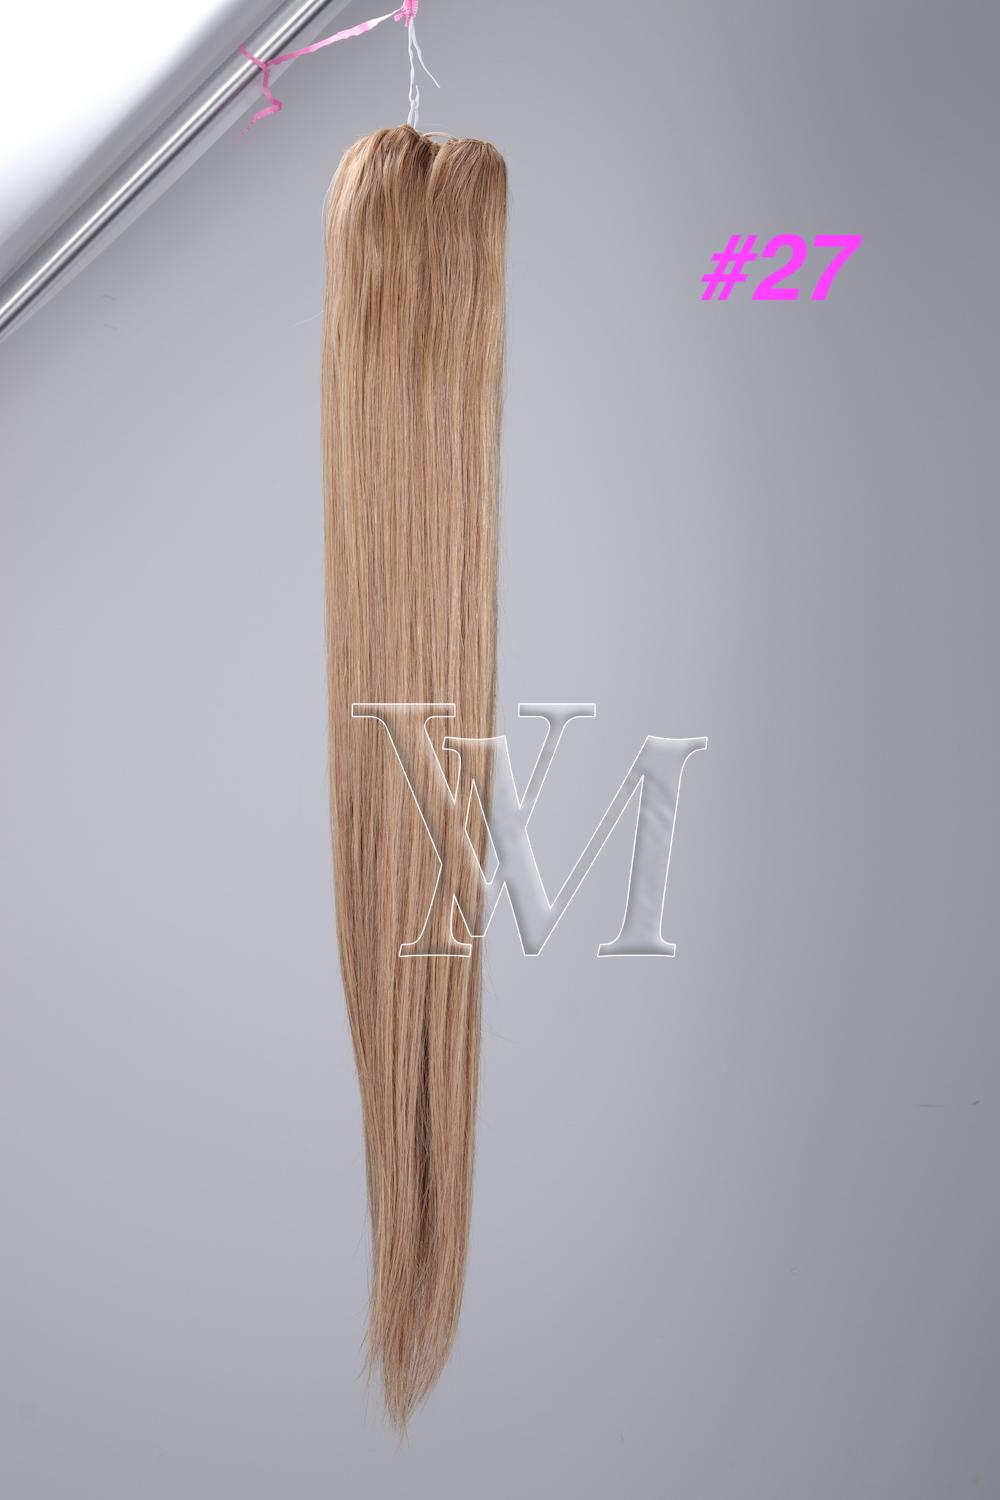 Extensões loiras Virgin 160g Girls Hair Hair Double Duplating Magic Wrap Extensions Silky Straight No derramando 12-26 cabelos humanos russos brasileiros europeus